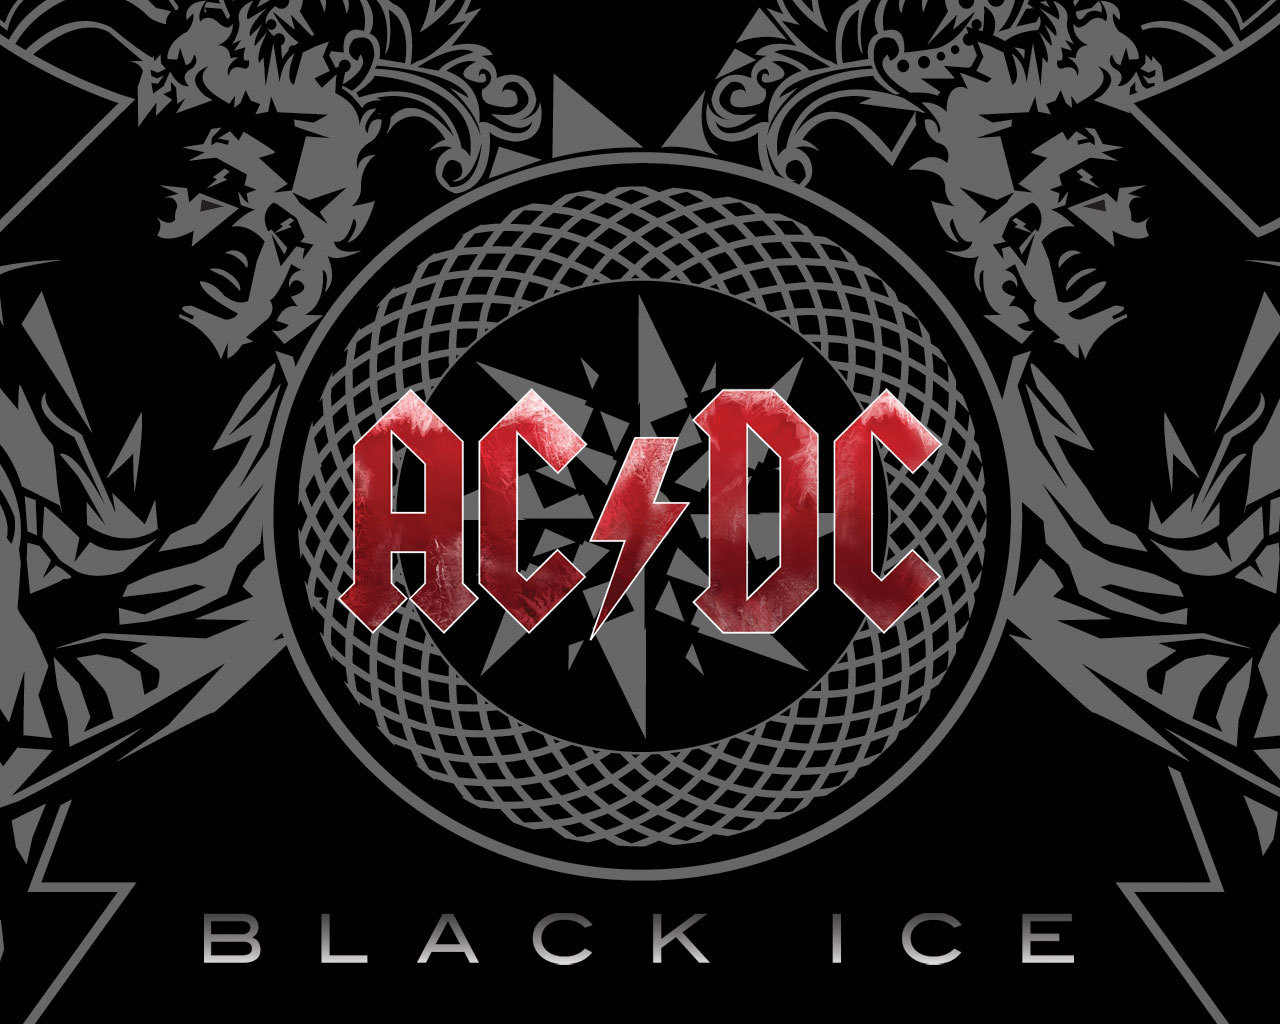 AC DC   Black Ice album completo full album